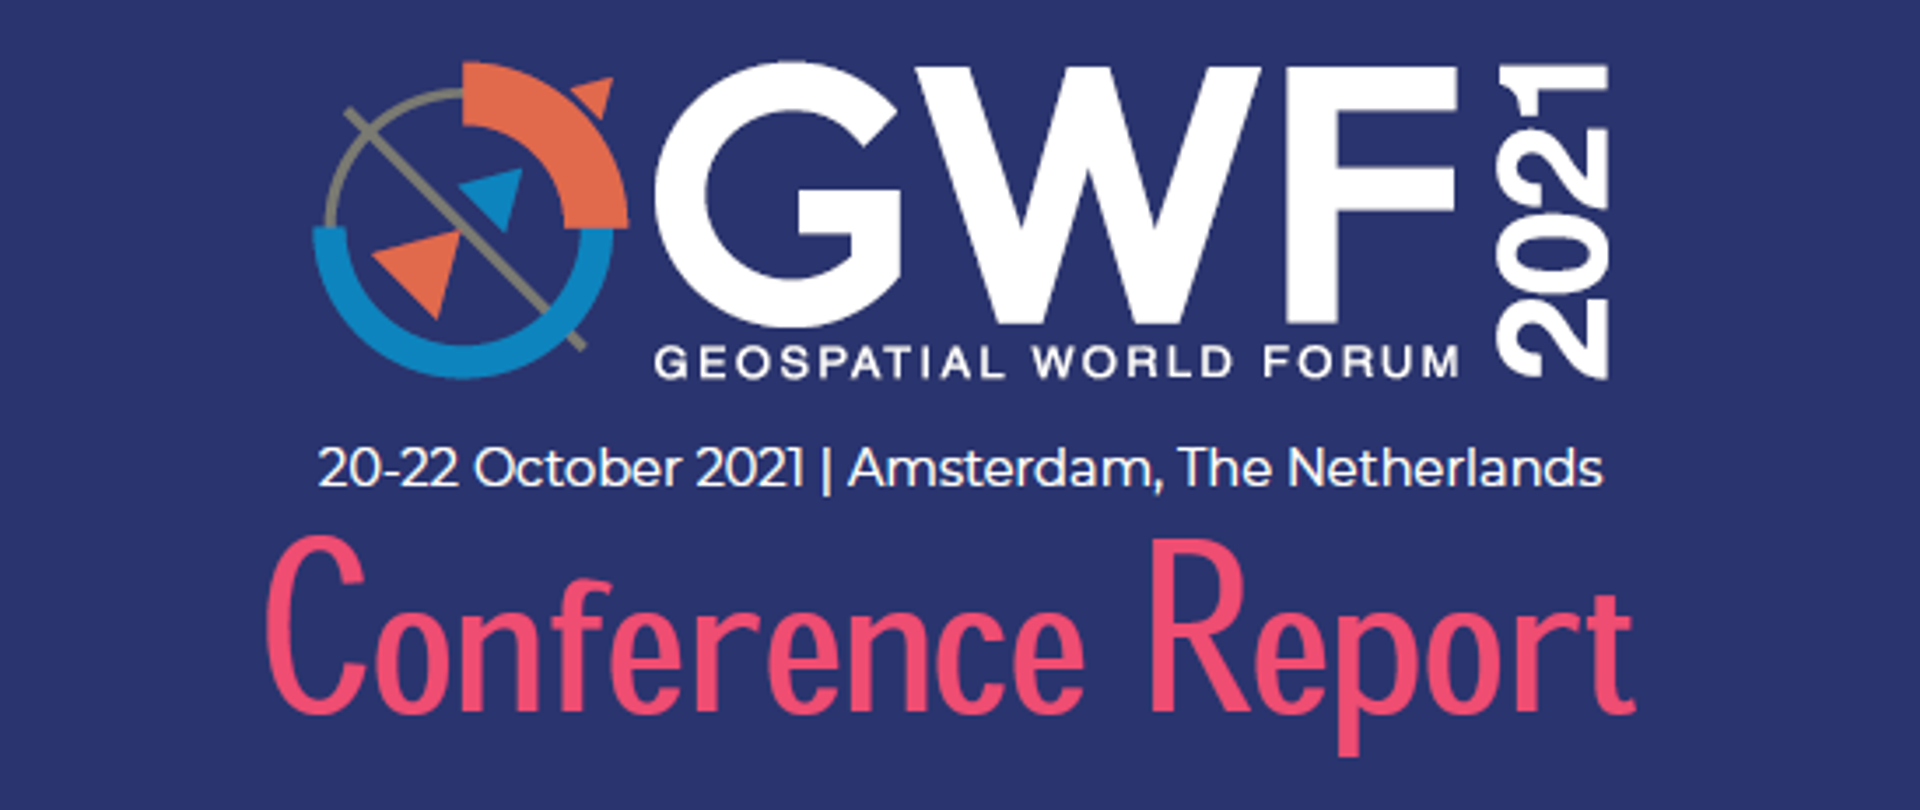 Zdjęcie okładki raportu z konferencji Geospatial World Forum 2021. Na środku logo Geospatial World Forum 2021, data i miejsce konferencji - 20-22 października 2021 r. w Amsterdamie. Dookoła zdjęcia prelegentów przemawiających podczas wydarzenia. 